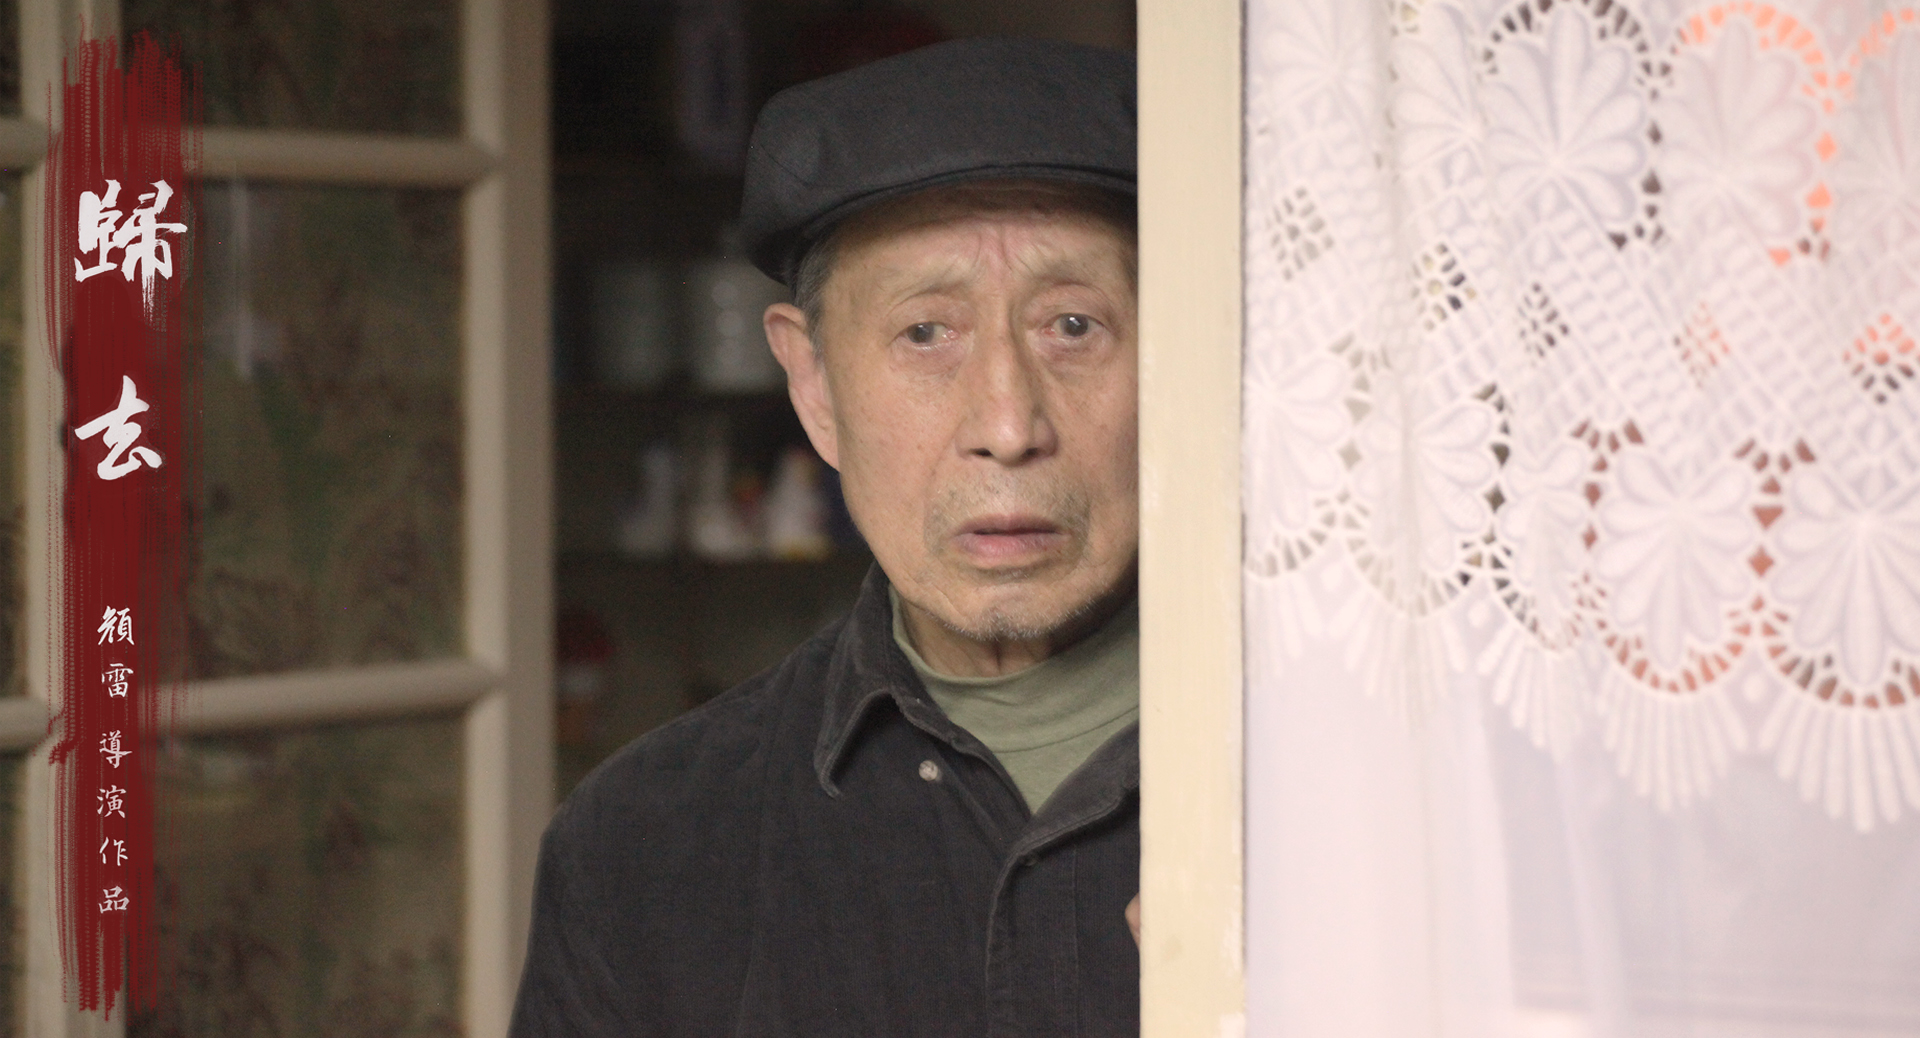 《归去》发布最新预告 剖析中国式家庭关系